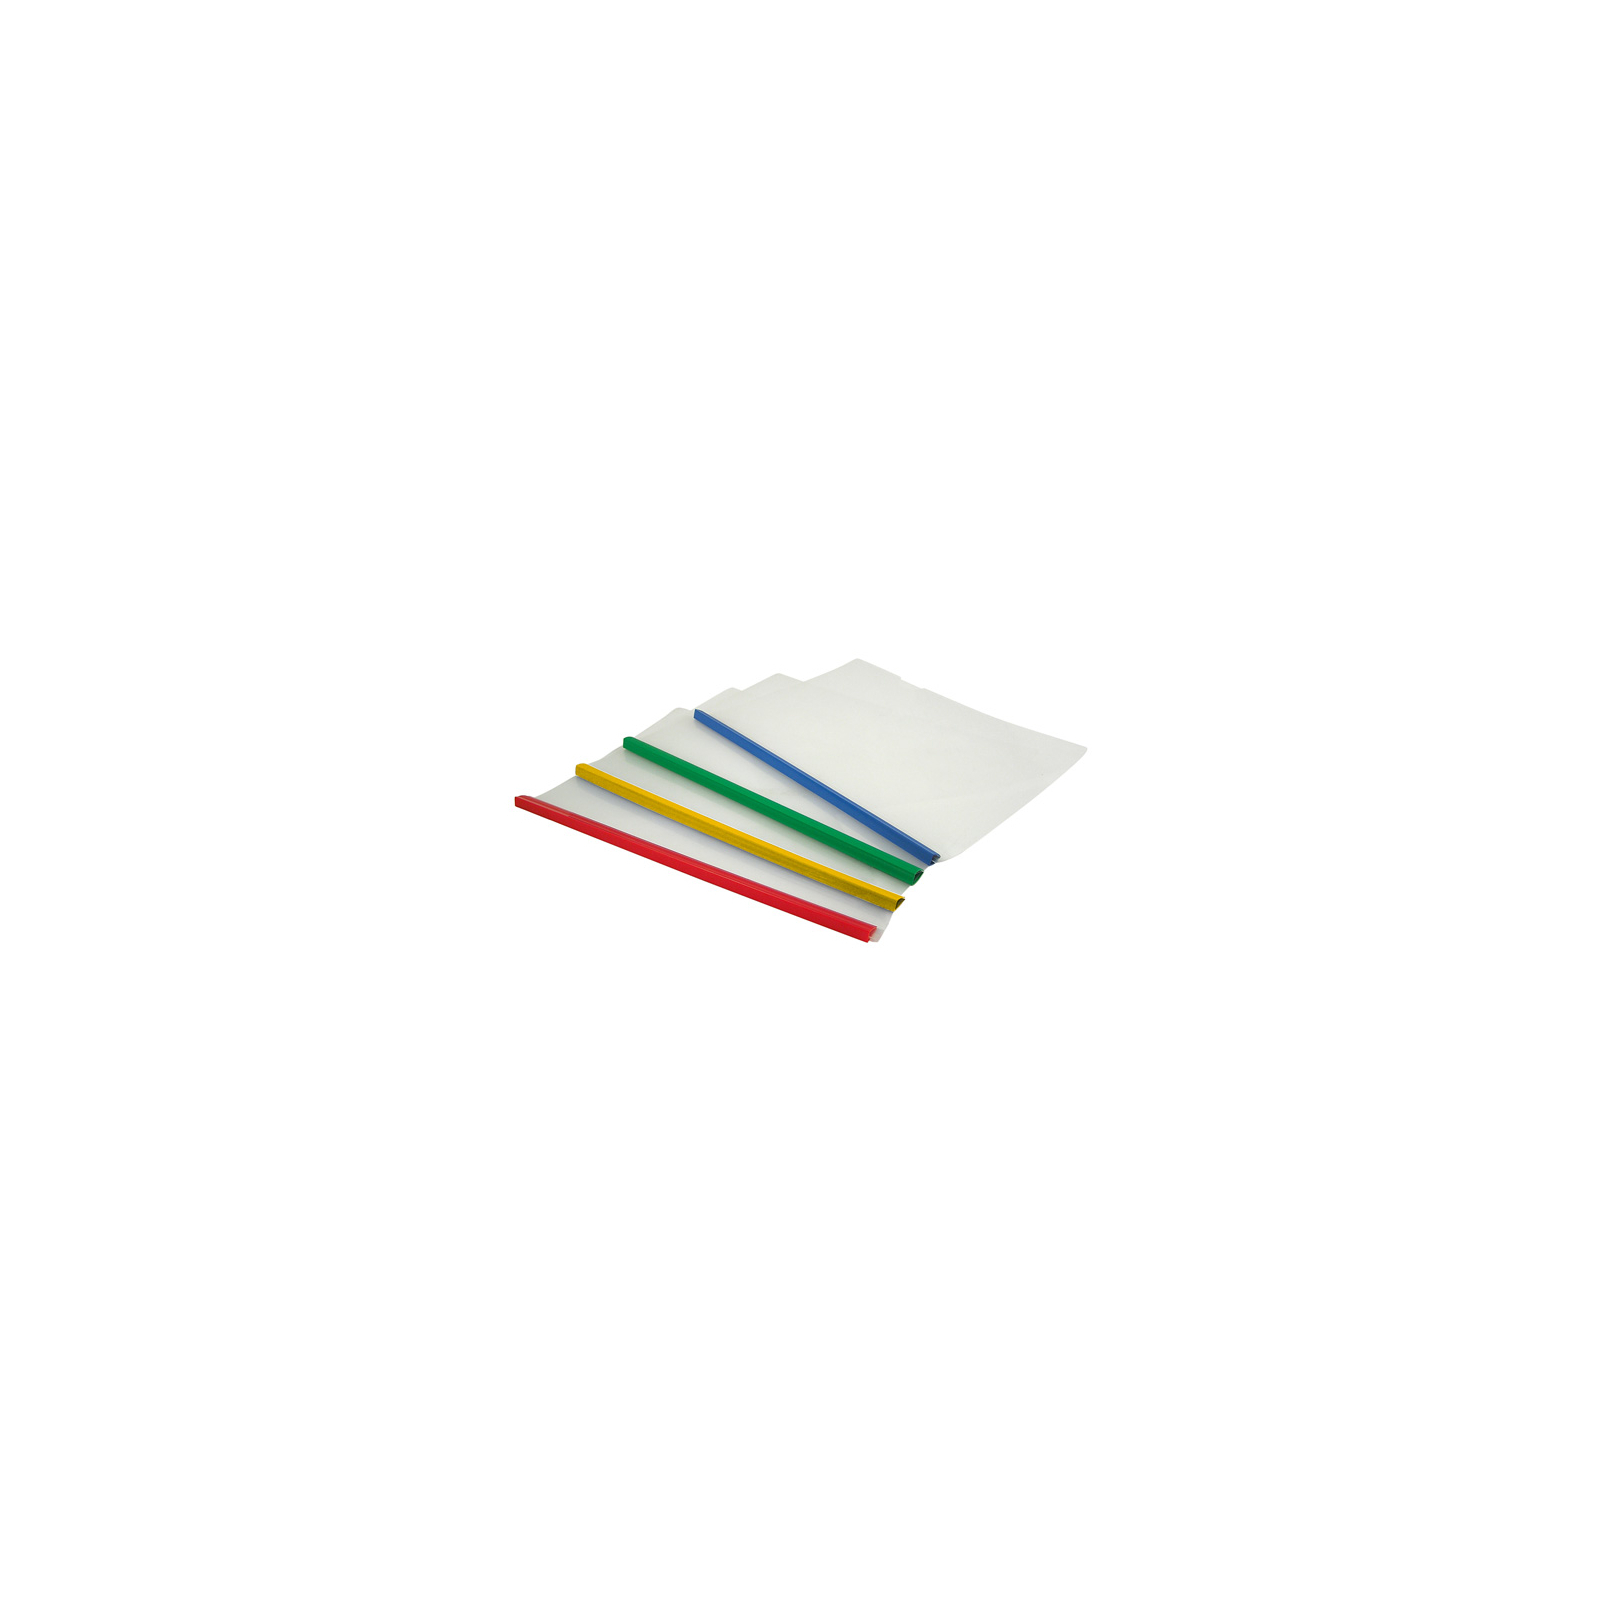 Папка-швидкозшивач Axent А4, планка 6мм, assorted colors (1416-00-А)